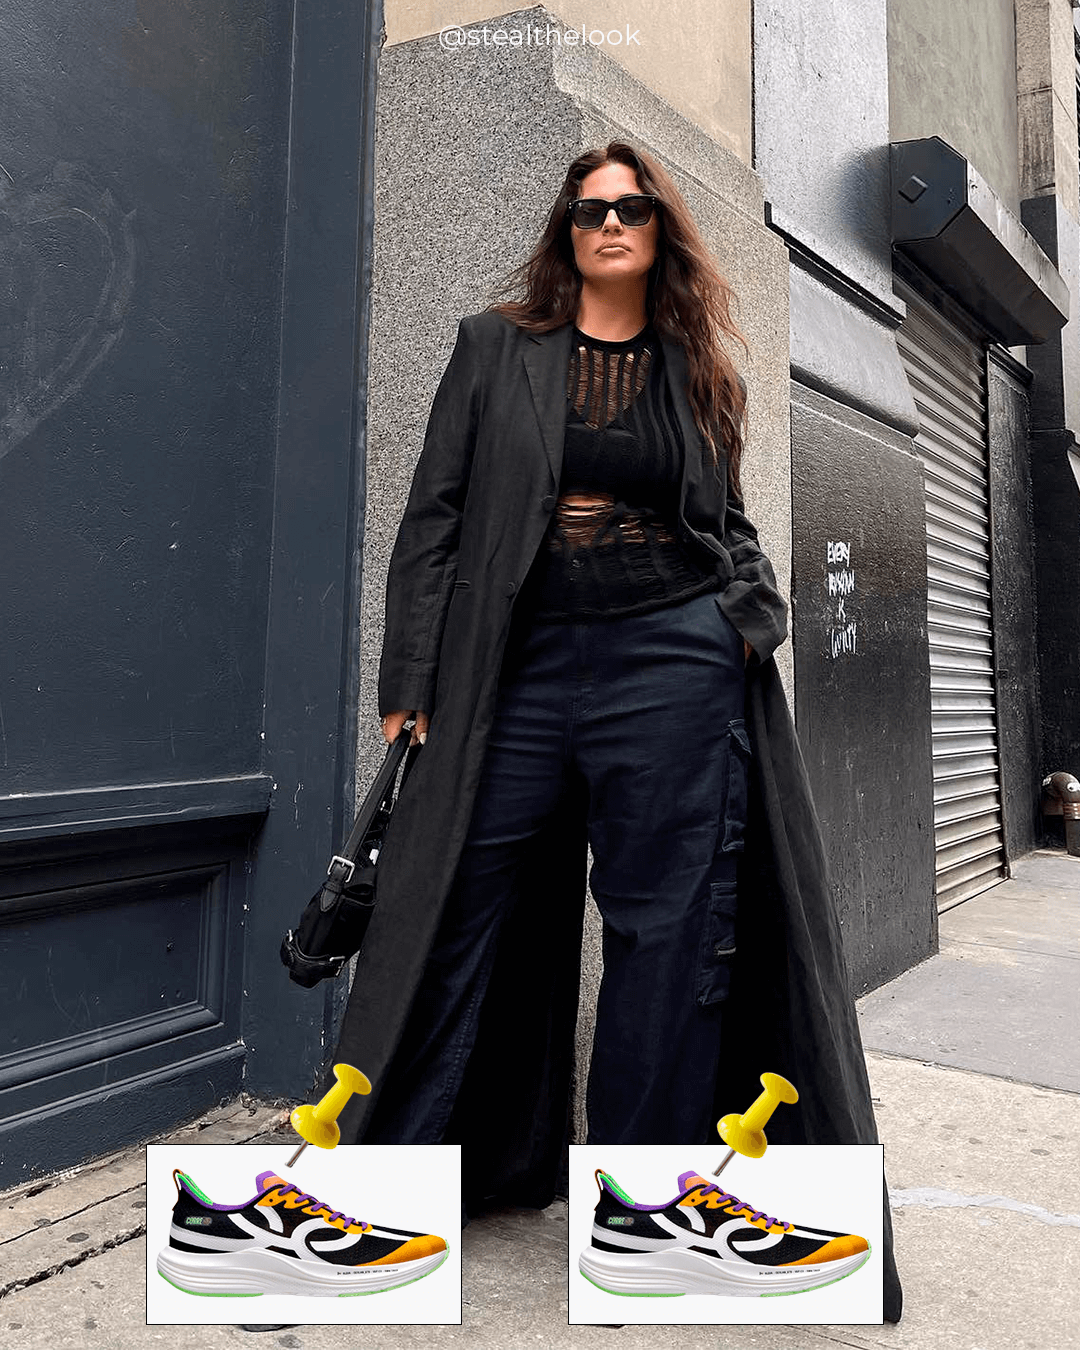 Ashley Graham - calça preta, casaco longo preto e tênis colorido - tênis esportivos - inverno - mulher em pé na rua usando óculos de sol - https://stealthelook.com.br